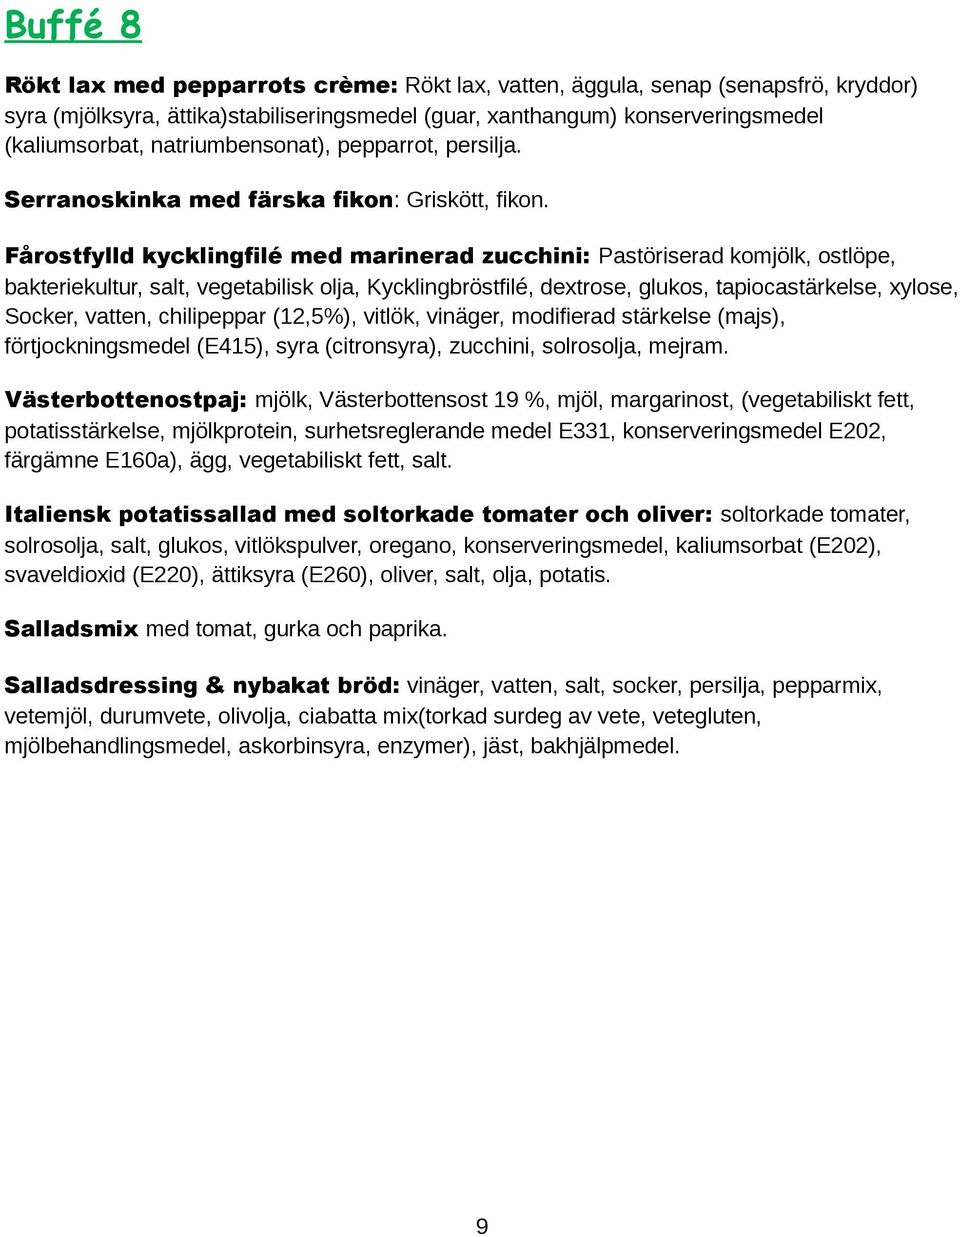 Fårostfylld kycklingfilé med marinerad zucchini: Pastöriserad komjölk, ostlöpe, bakteriekultur, salt, vegetabilisk olja, Kycklingbröstfilé, dextrose, glukos, tapiocastärkelse, xylose, Socker, vatten,